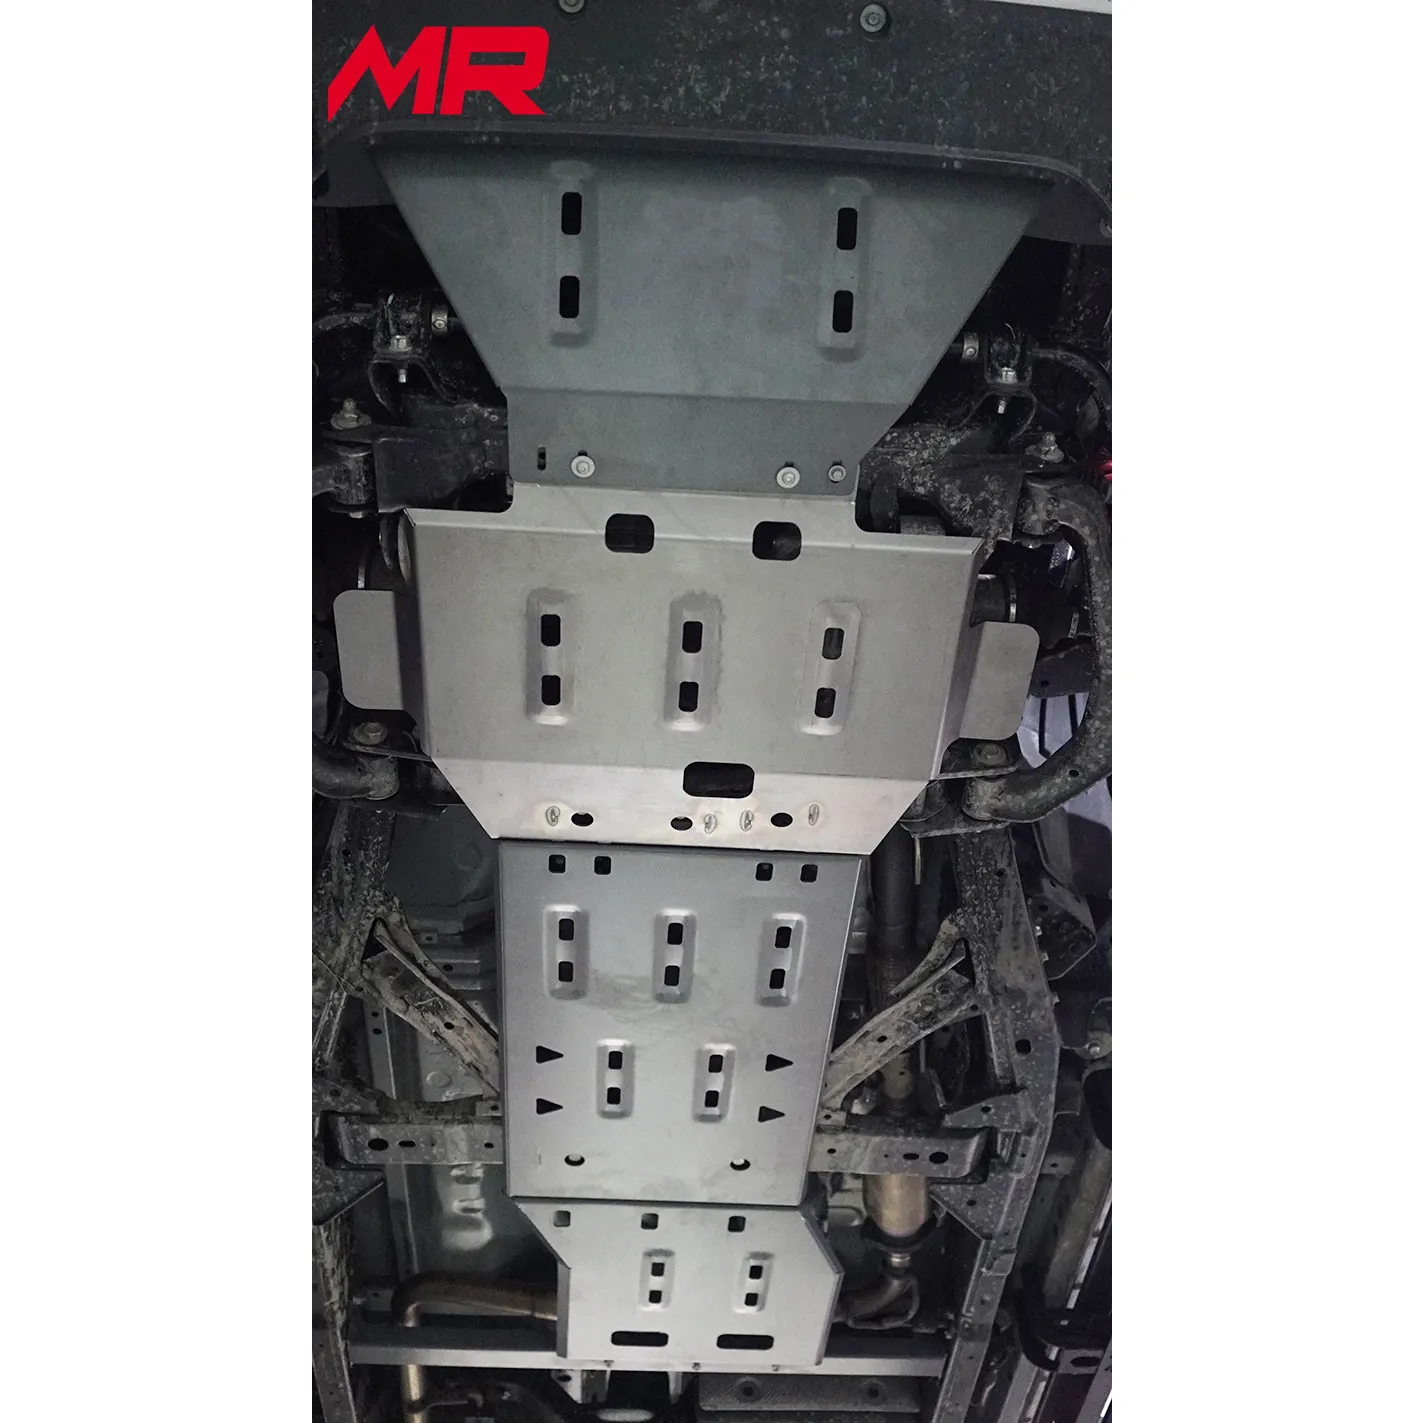 Pick Up 4X4ออฟโร้ดอุปกรณ์เสริมในรถยนต์ภายใต้เครื่องยนต์ยามแผ่นลื่นไถลสำหรับนิสสันนาวารา